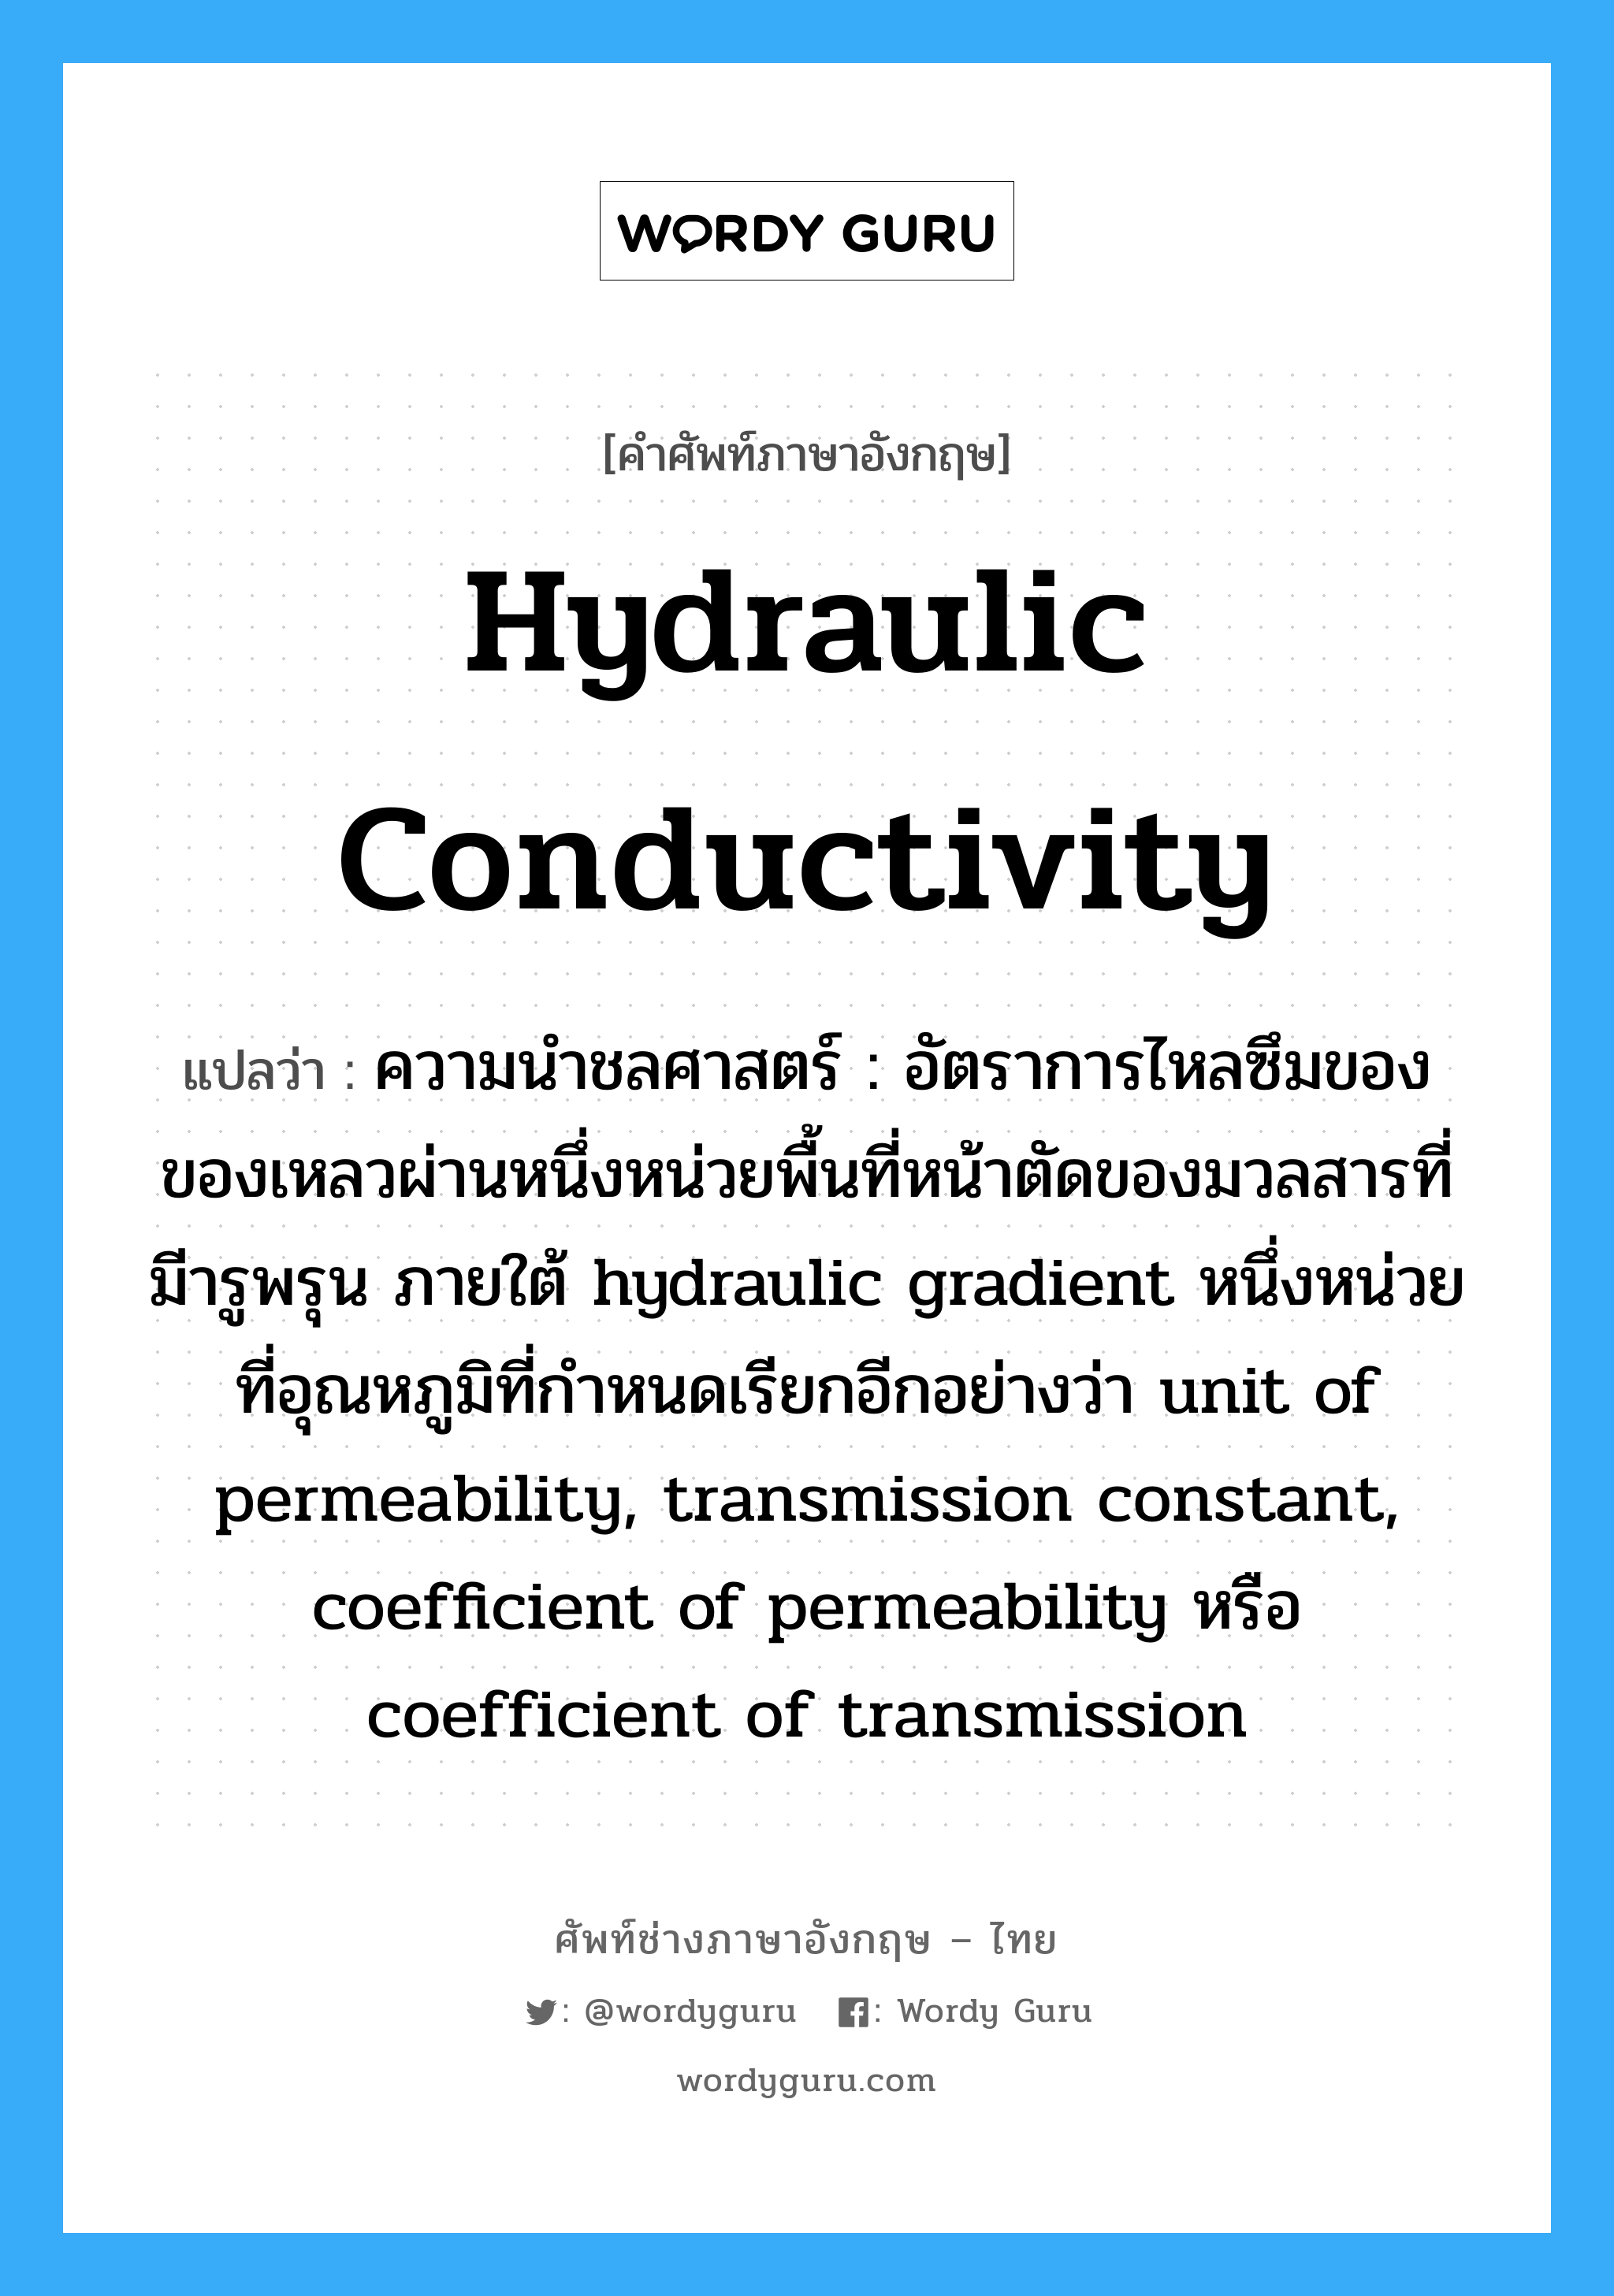 hydraulic conductivity แปลว่า?, คำศัพท์ช่างภาษาอังกฤษ - ไทย hydraulic conductivity คำศัพท์ภาษาอังกฤษ hydraulic conductivity แปลว่า ความนำชลศาสตร์ : อัตราการไหลซึมของของเหลวผ่านหนึ่งหน่วยพื้นที่หน้าตัดของมวลสารที่มีารูพรุน ภายใต้ hydraulic gradient หนึ่งหน่วย ที่อุณหภูมิที่กำหนดเรียกอีกอย่างว่า unit of permeability, transmission constant, coefficient of permeability หรือ coefficient of transmission